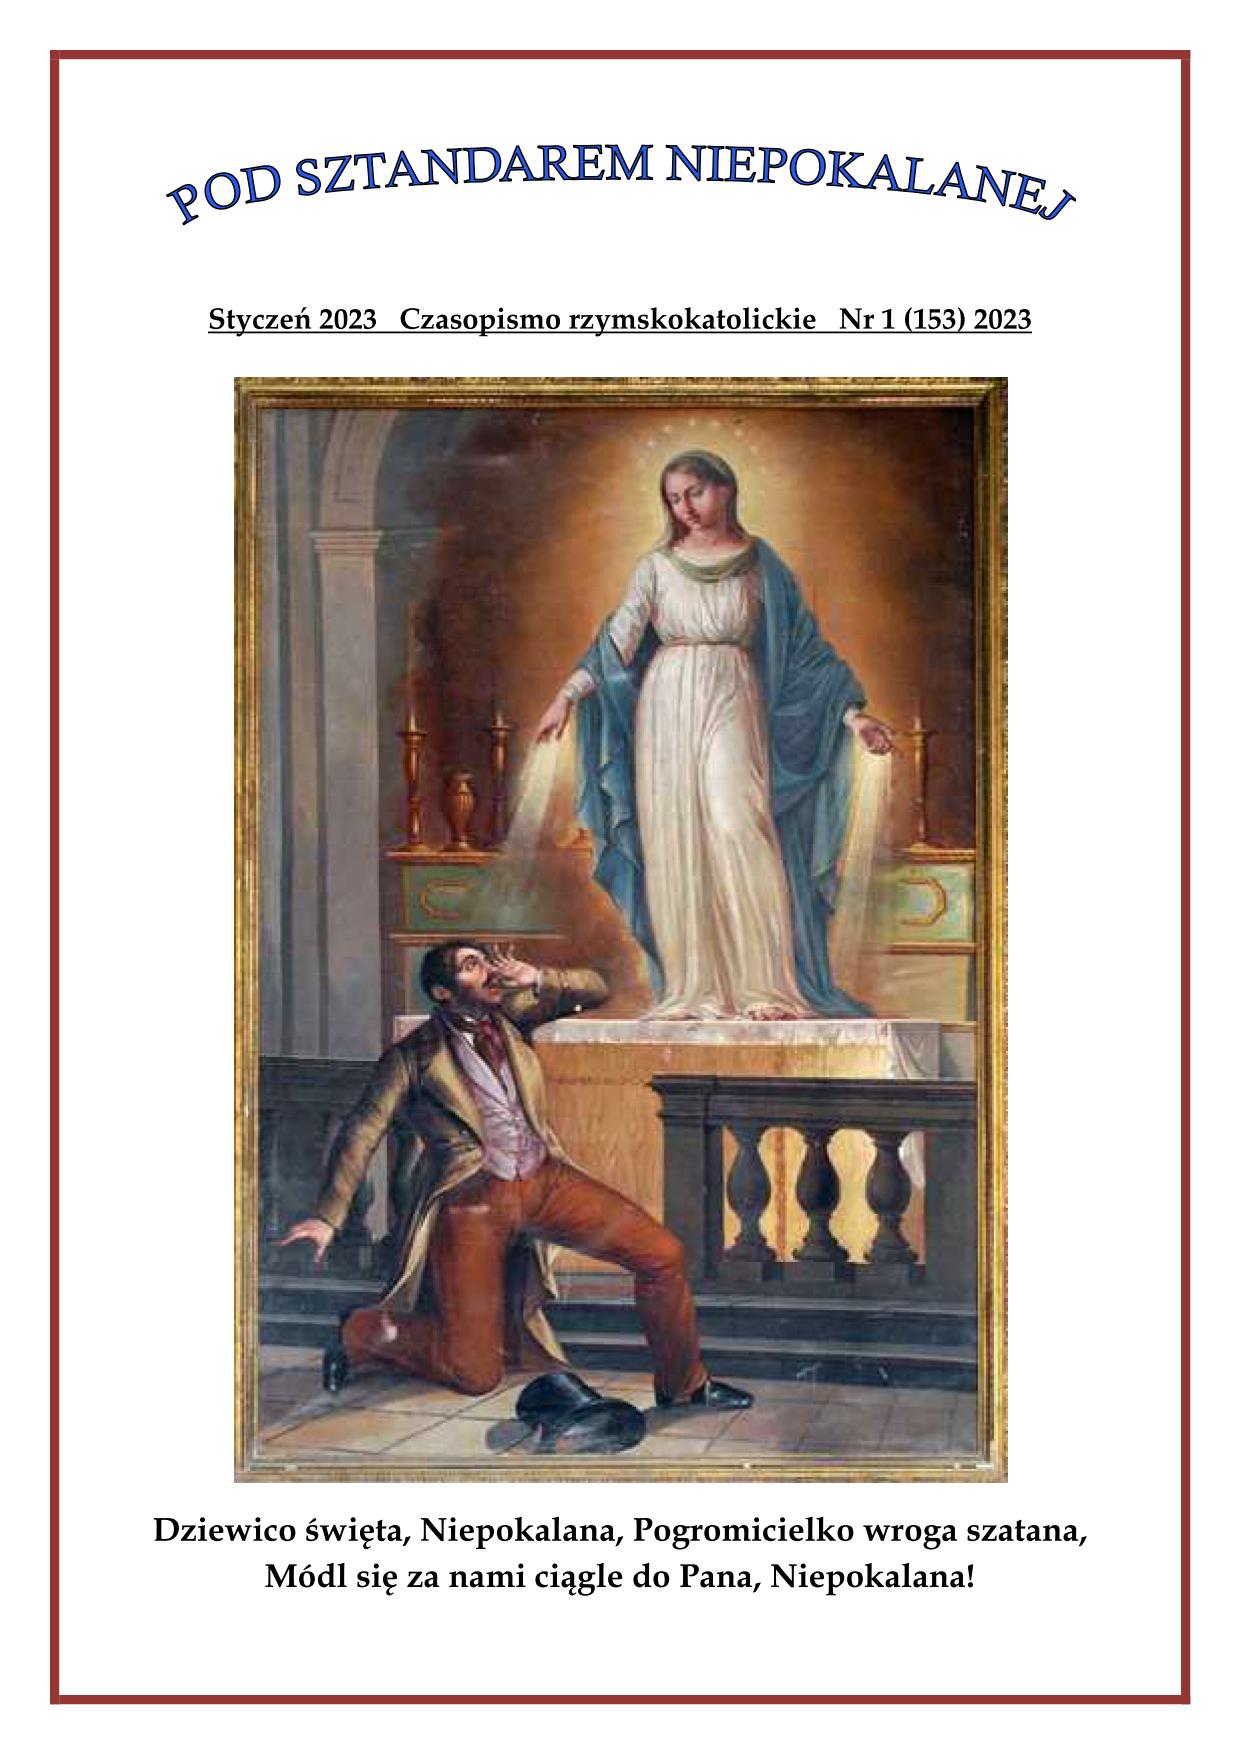 "Pod sztandarem Niepokalanej". Nr 153. Styczeń 2023. Czasopismo rzymskokatolickie.